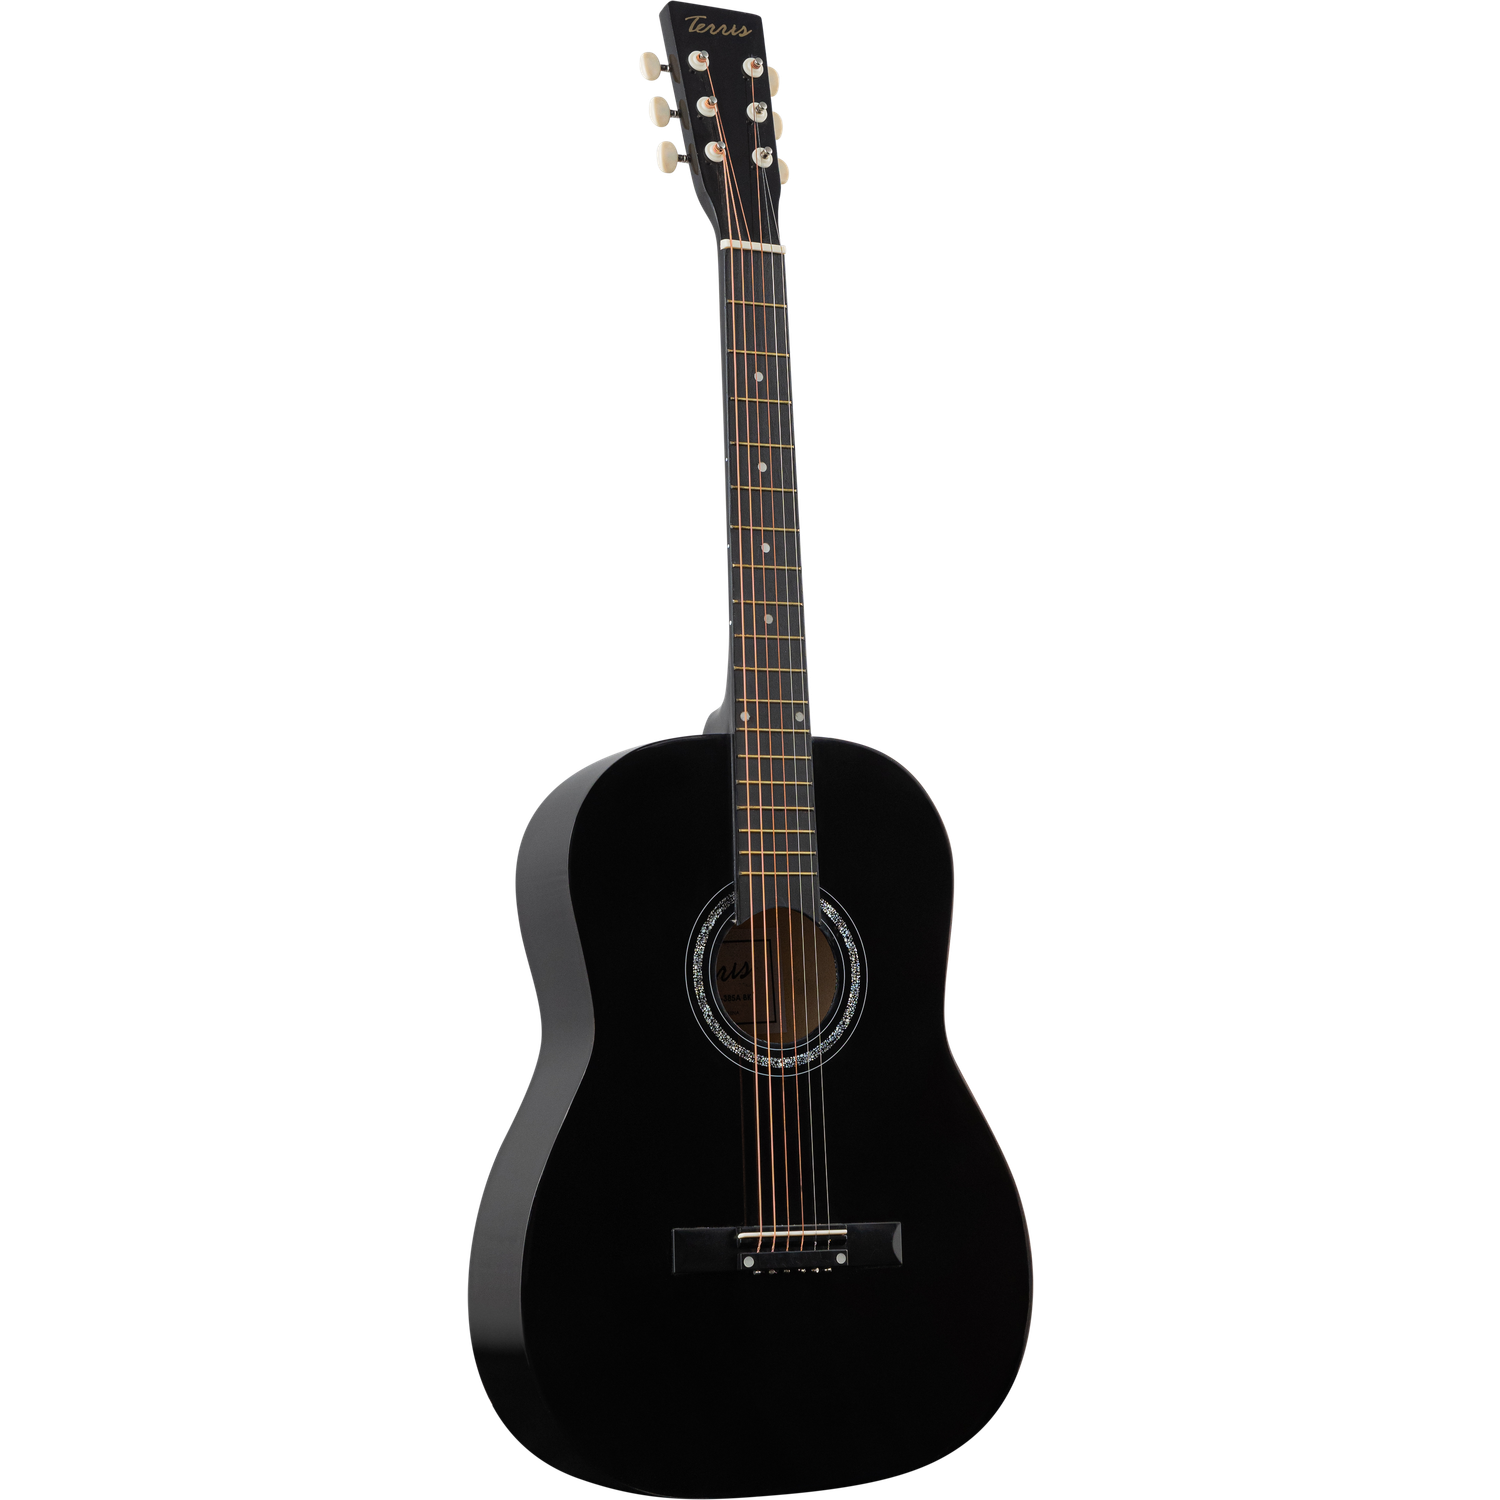 Гитара акустическая Terris TF-385A BK шестиструнная цвет черный - фото 5